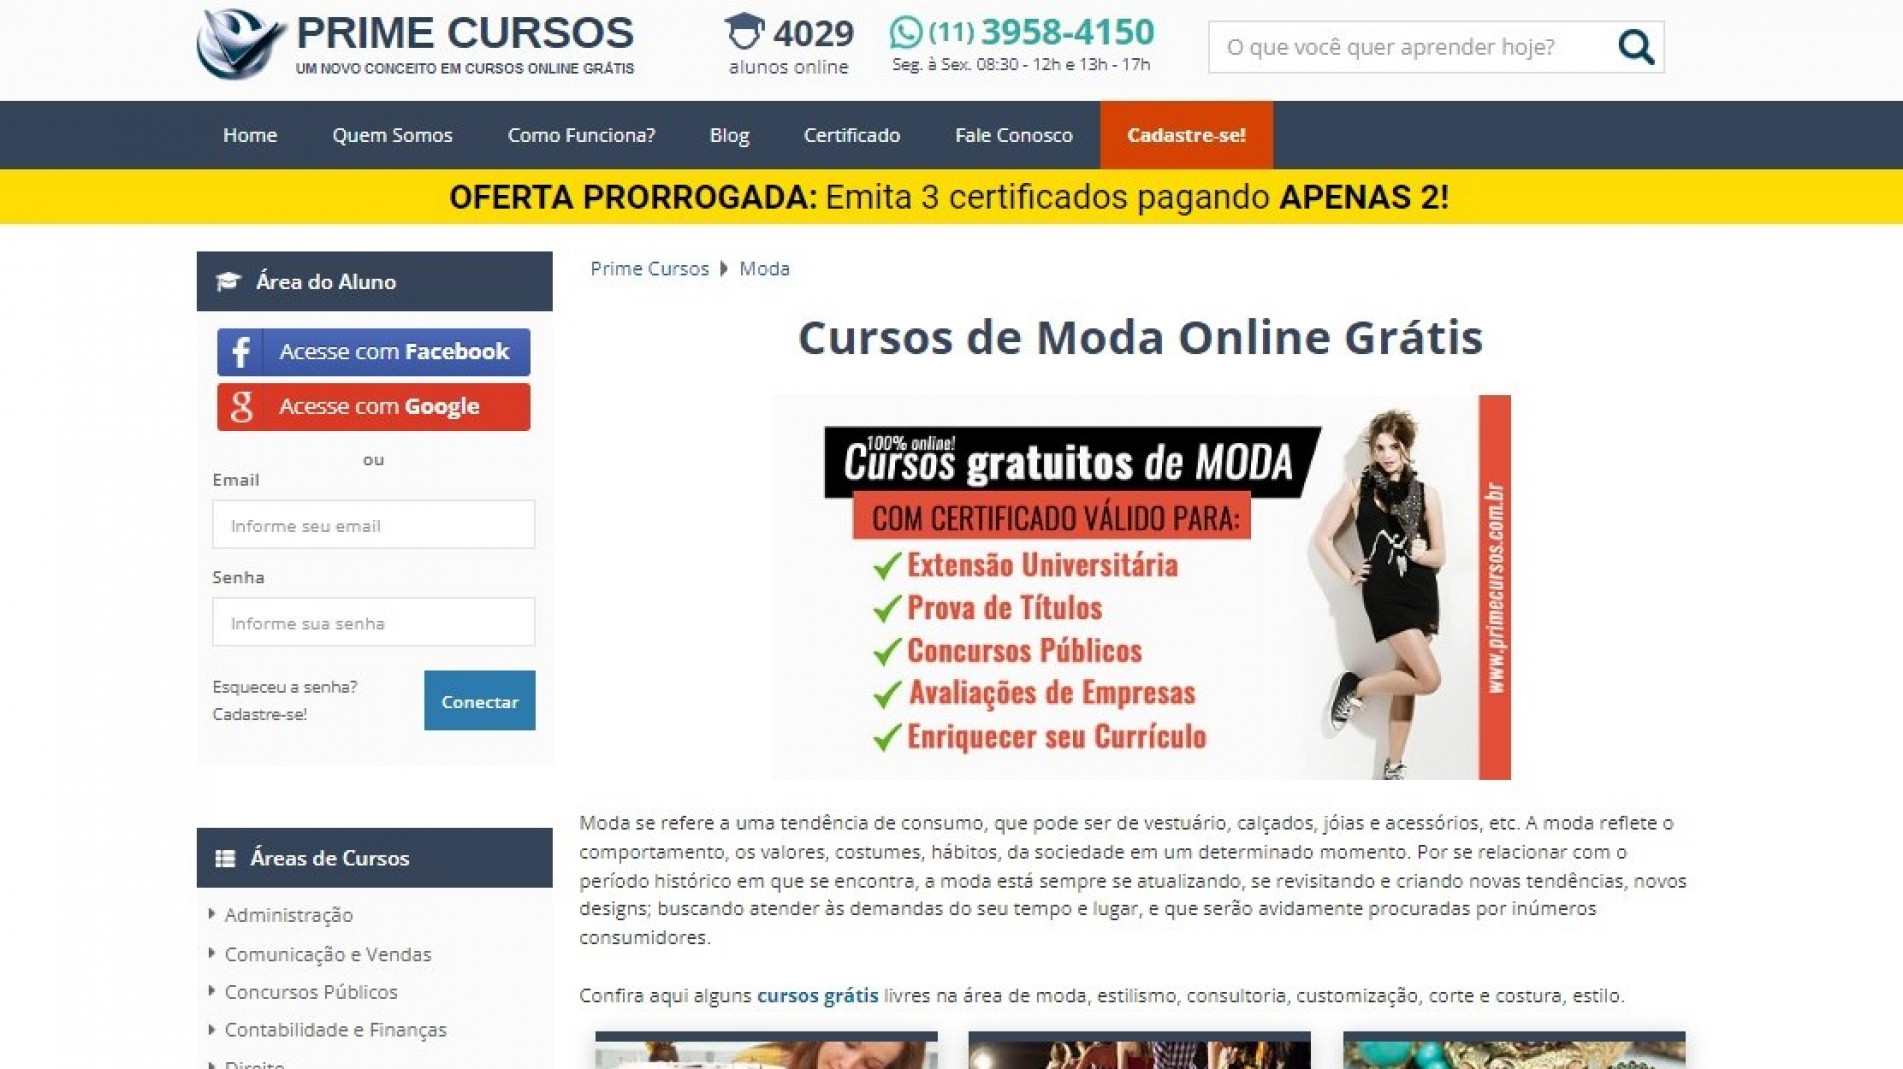 CURSO DE MODELAGEM CORTE E COSTURA + AULAS GRÁTIS AQUI